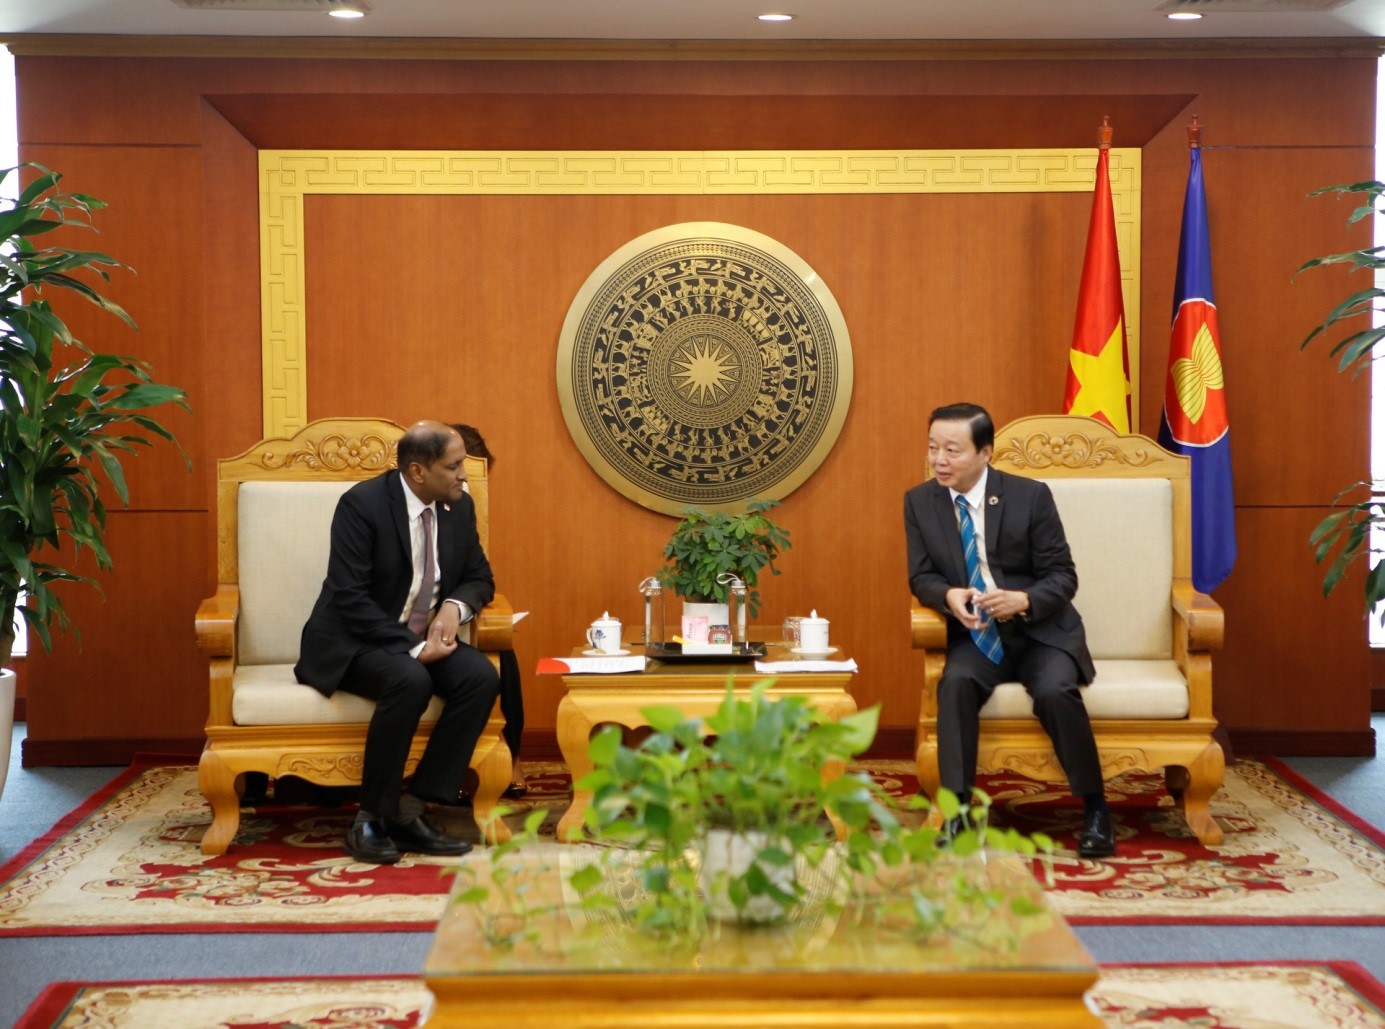 Bộ trưởng Bộ Tài nguyên và Môi trường Trần Hồng Hà tiếp xã giao ngài Jaya Ratman, Đại sứ Singapore tại Việt Nam